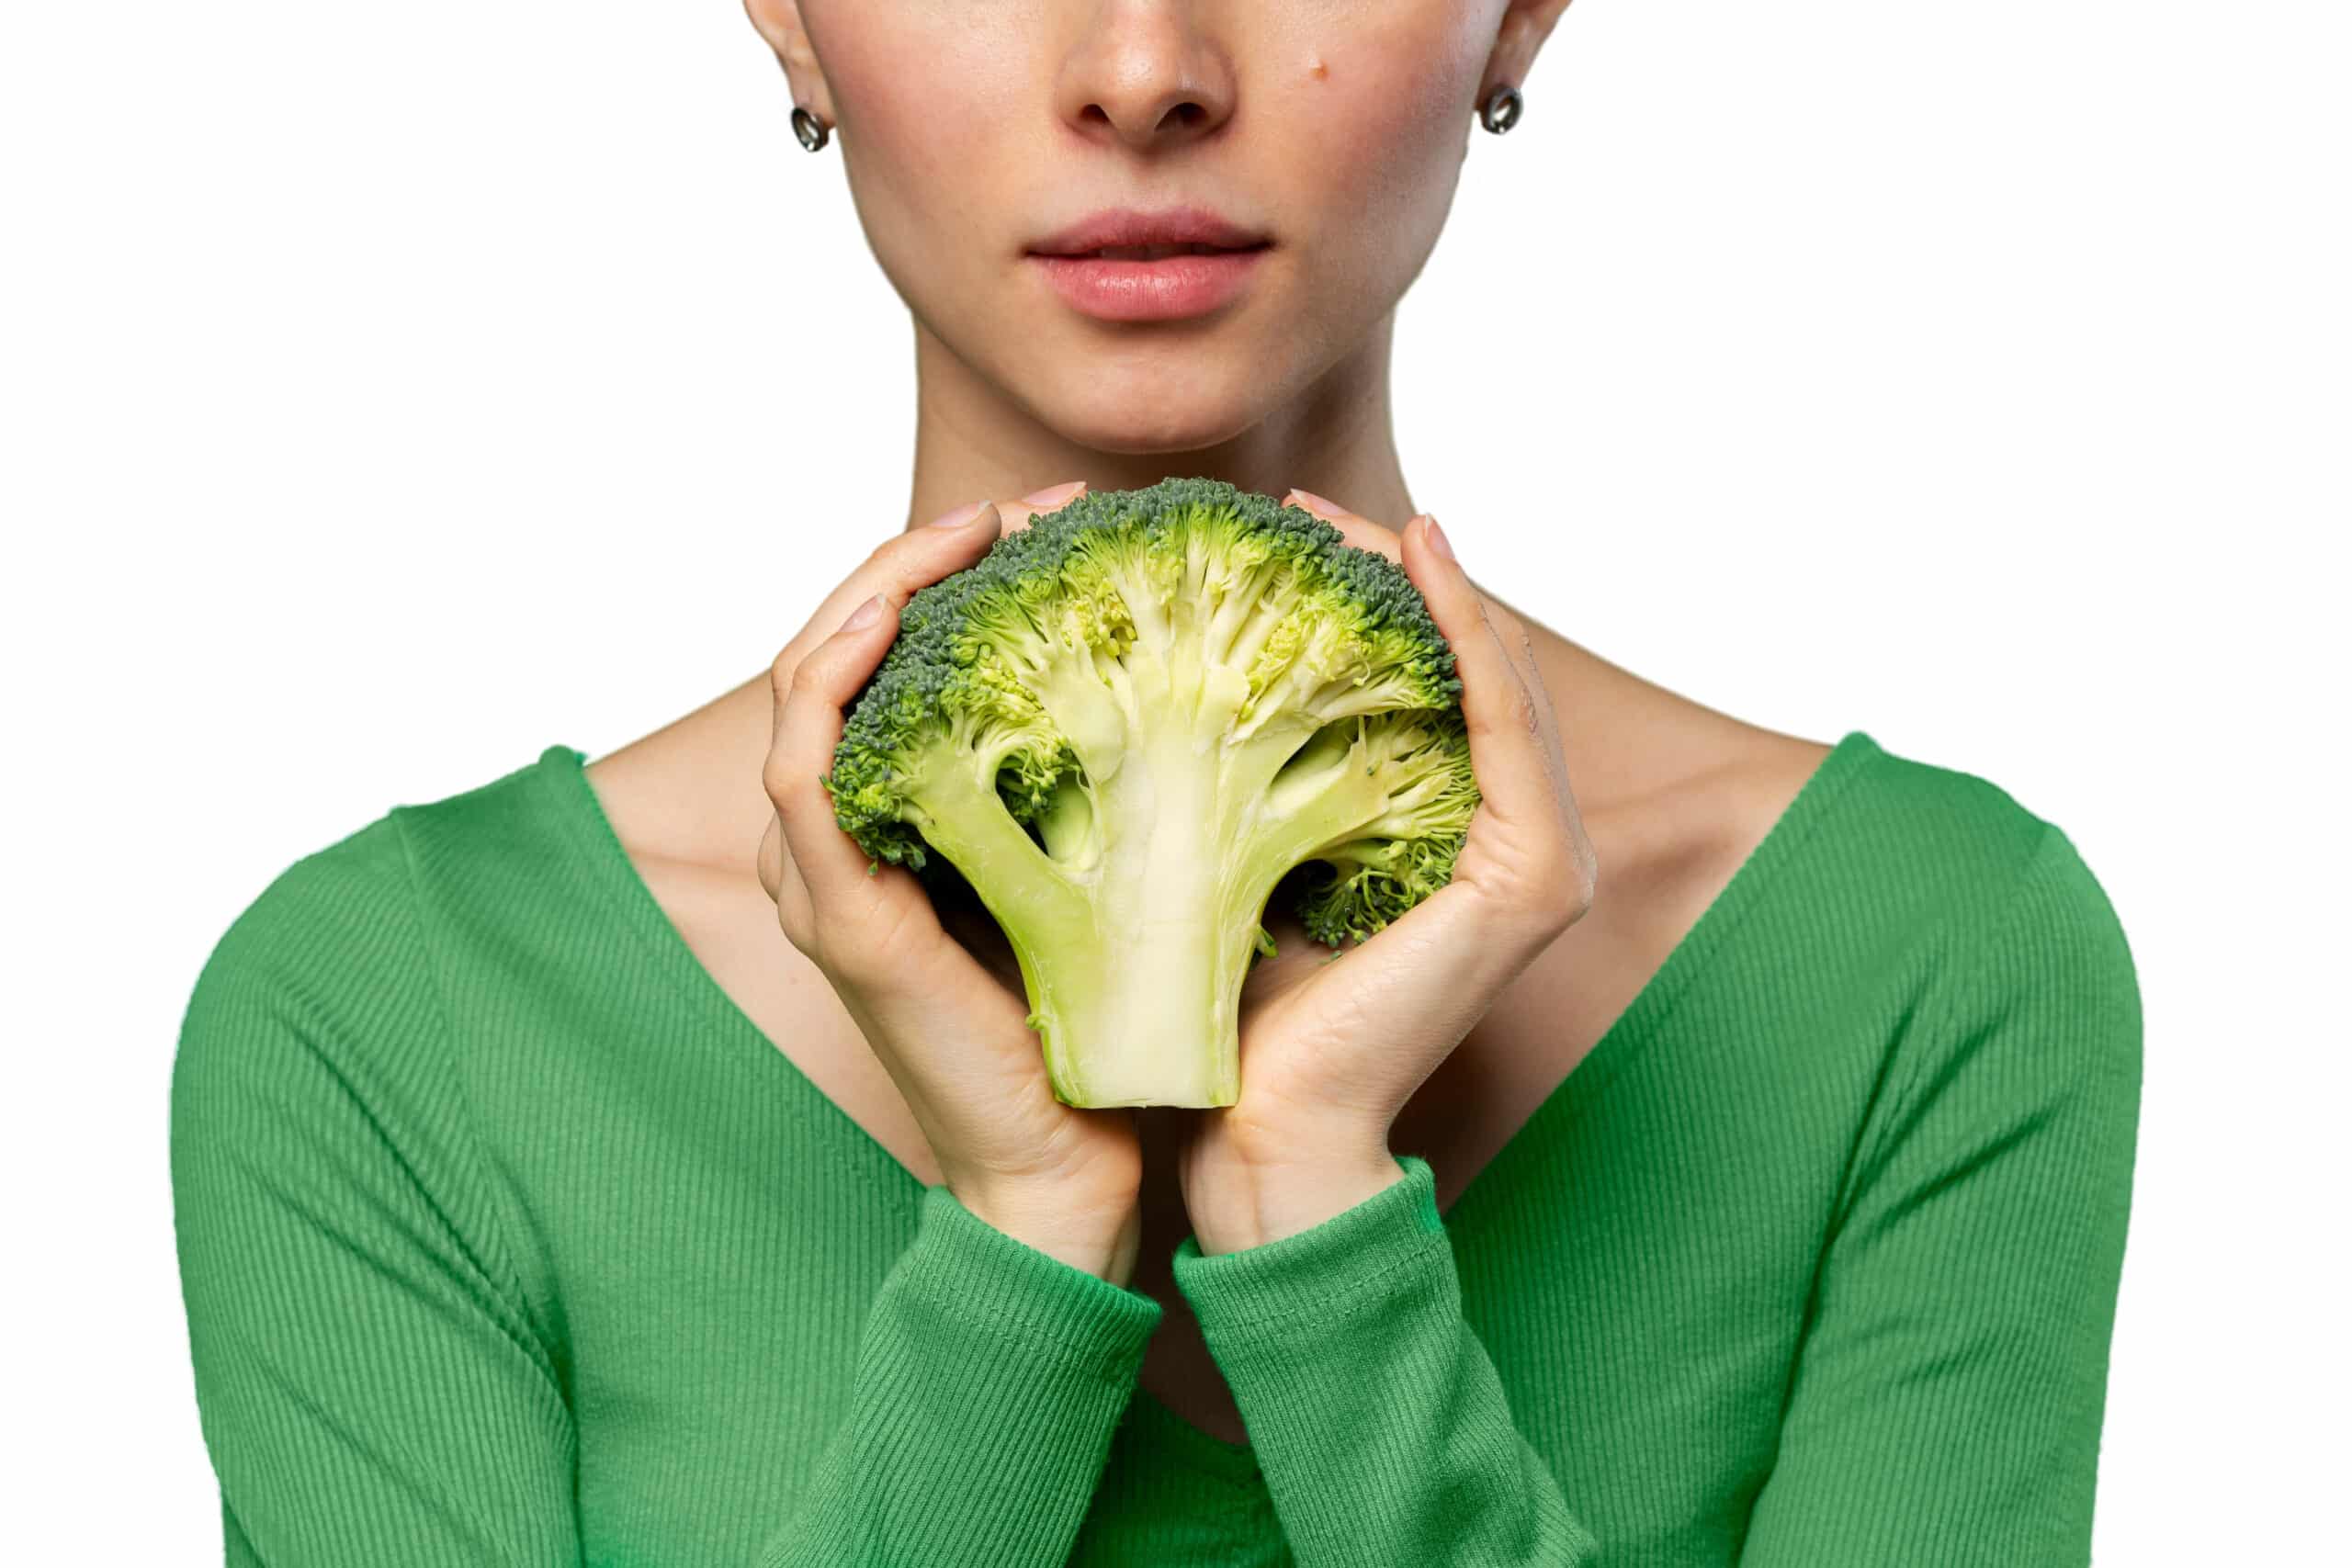 Tiroide e miti alimentari: soia e broccoli fanno male?